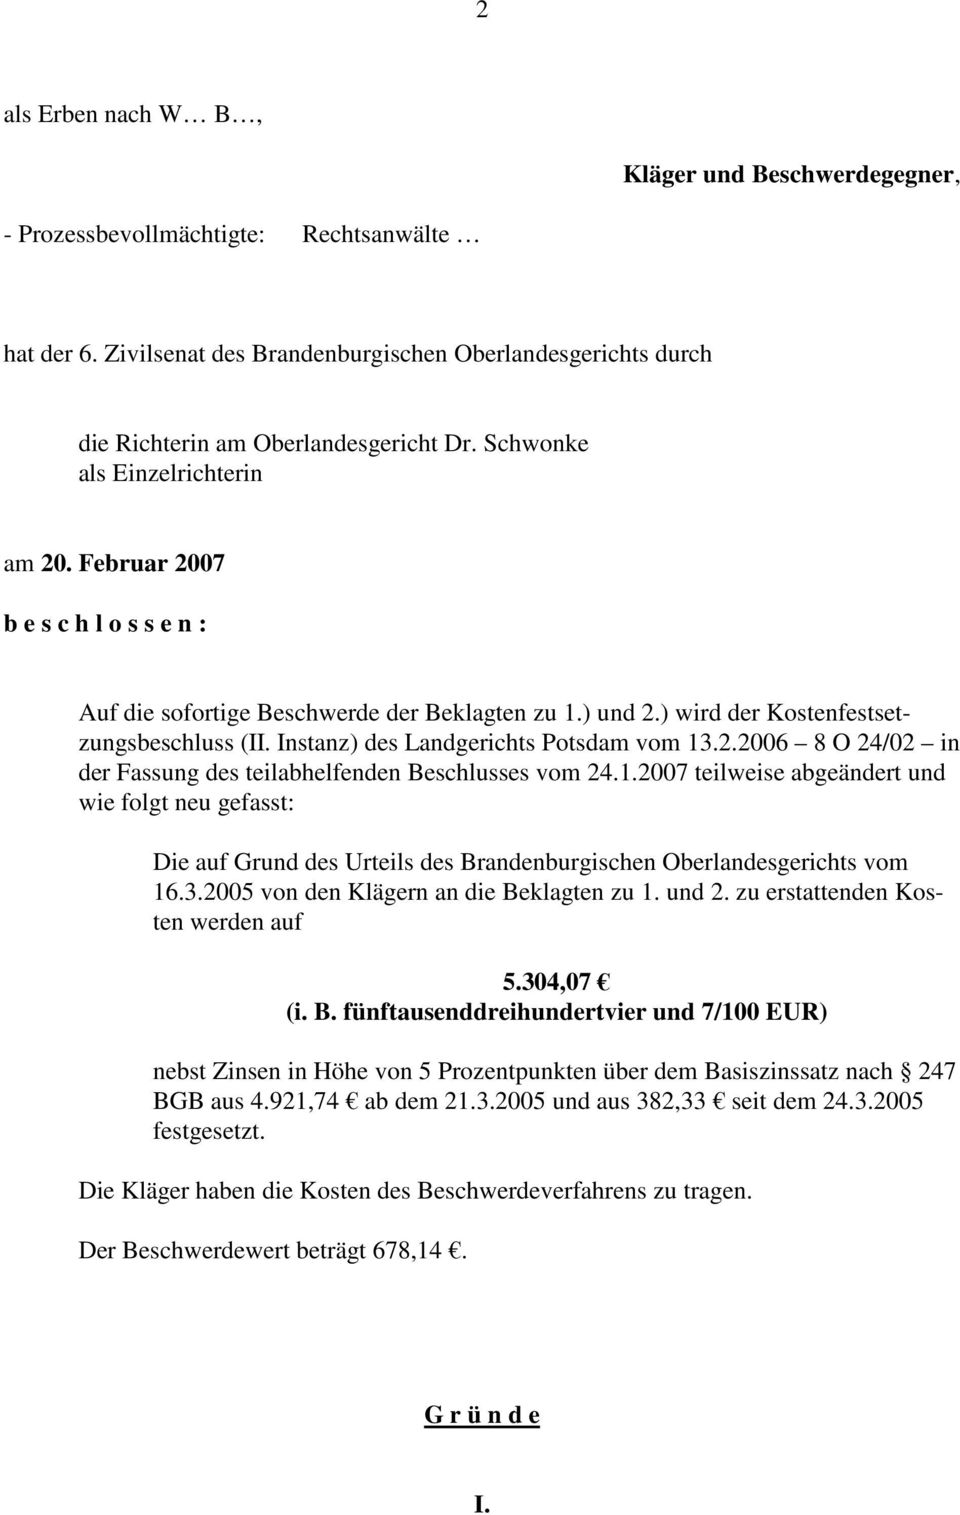 Instanz) des Landgerichts Potsdam vom 13.2.2006 8 O 24/02 in der Fassung des teilabhelfenden Beschlusses vom 24.1.2007 teilweise abgeändert und wie folgt neu gefasst: Die auf Grund des Urteils des Brandenburgischen Oberlandesgerichts vom 16.